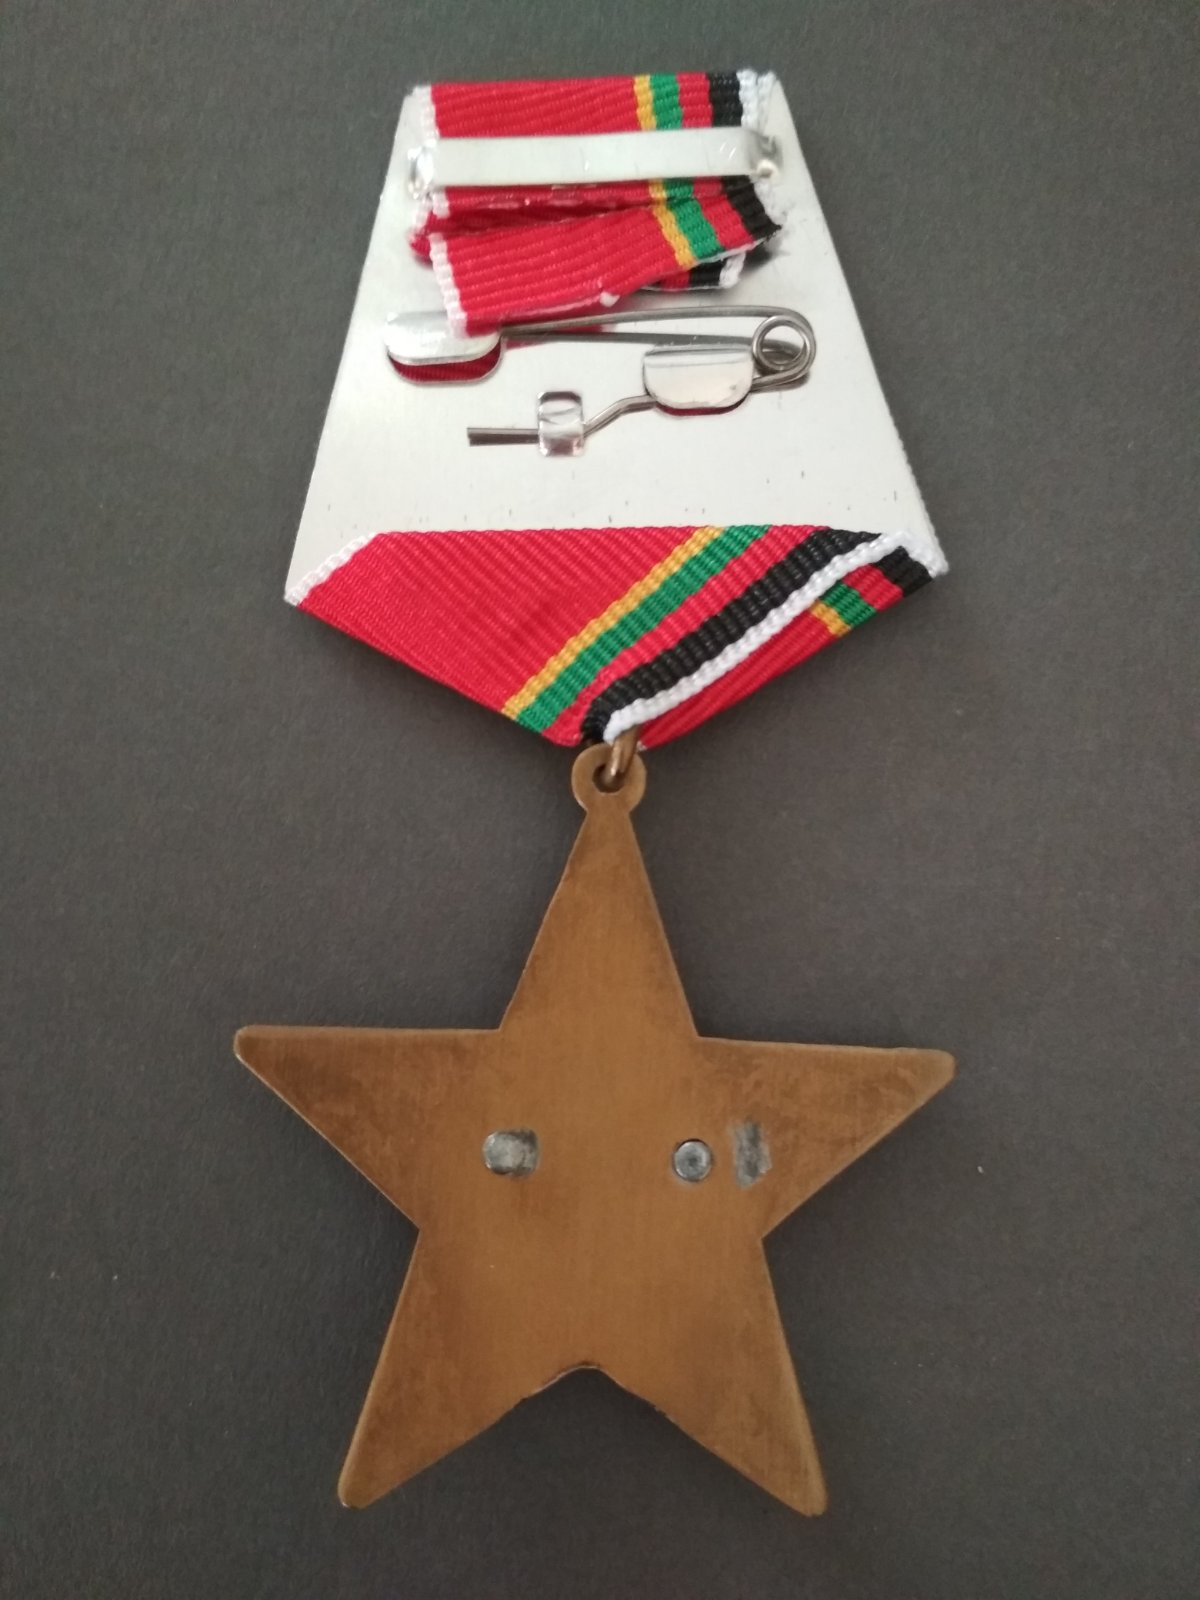 Медаль "30 лет вывода войск из Афганистана". Воин с автоматом на фоне красной звезды.